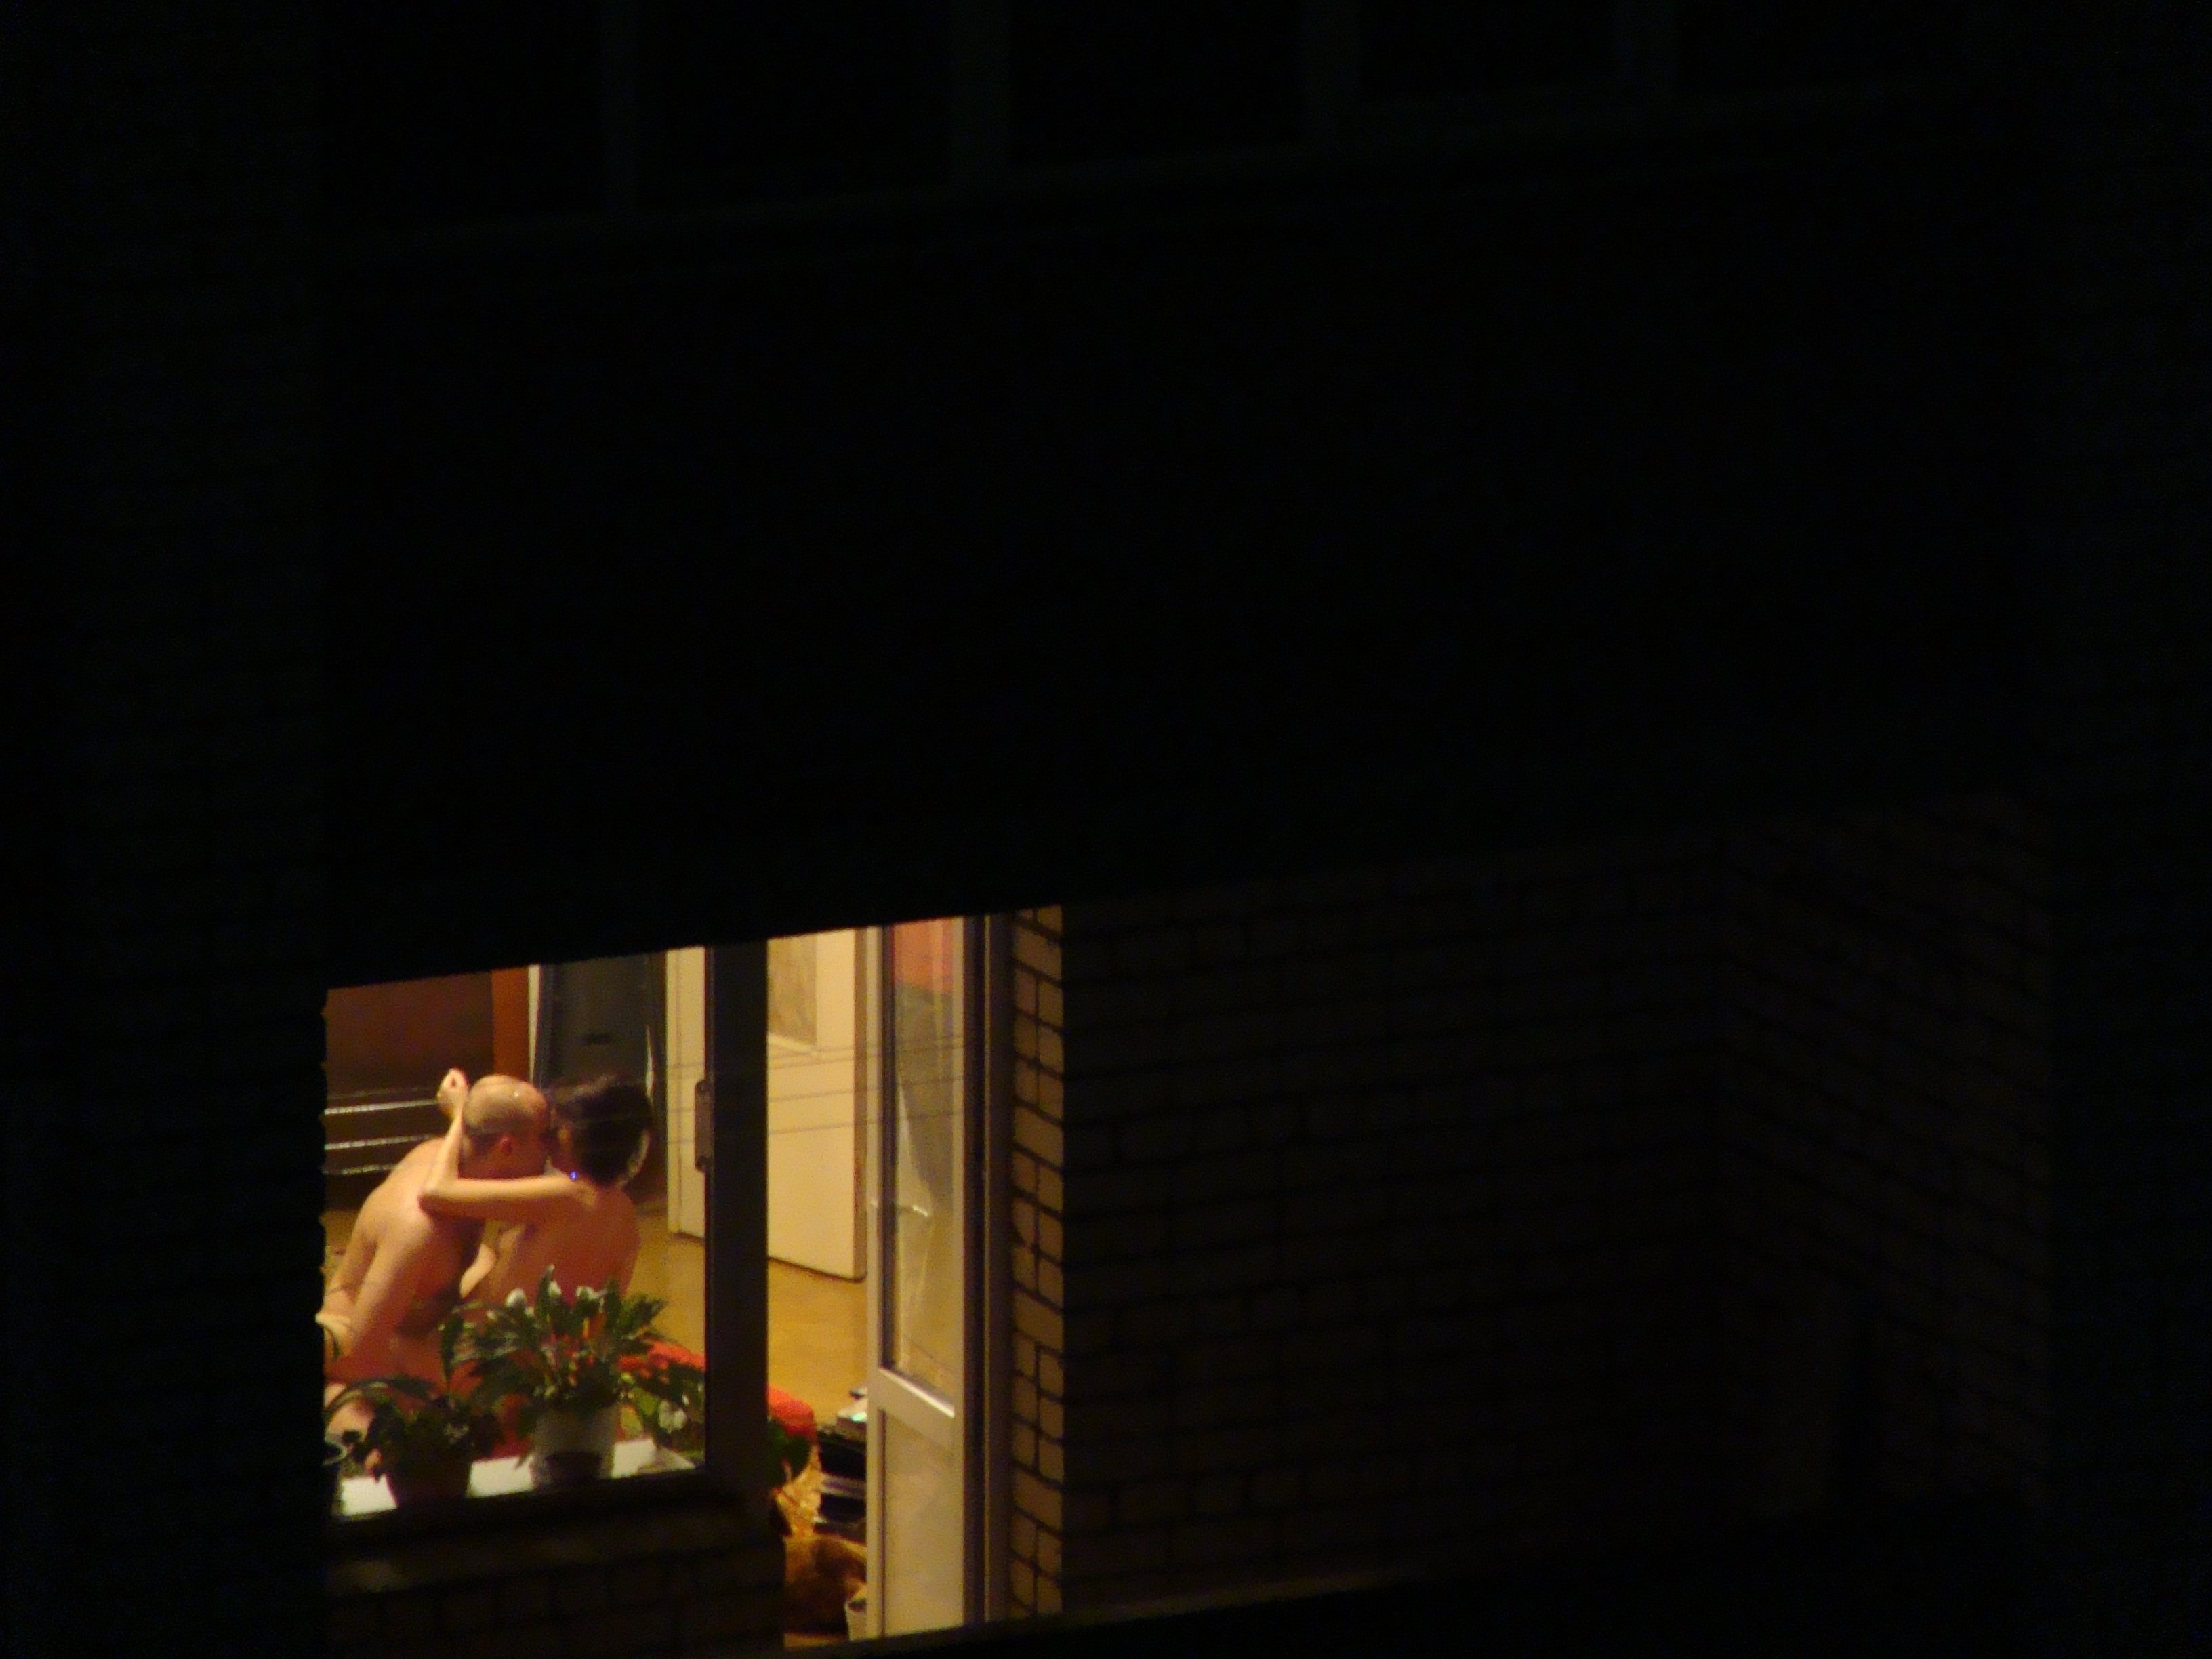 голая в окне дома фото фото 80